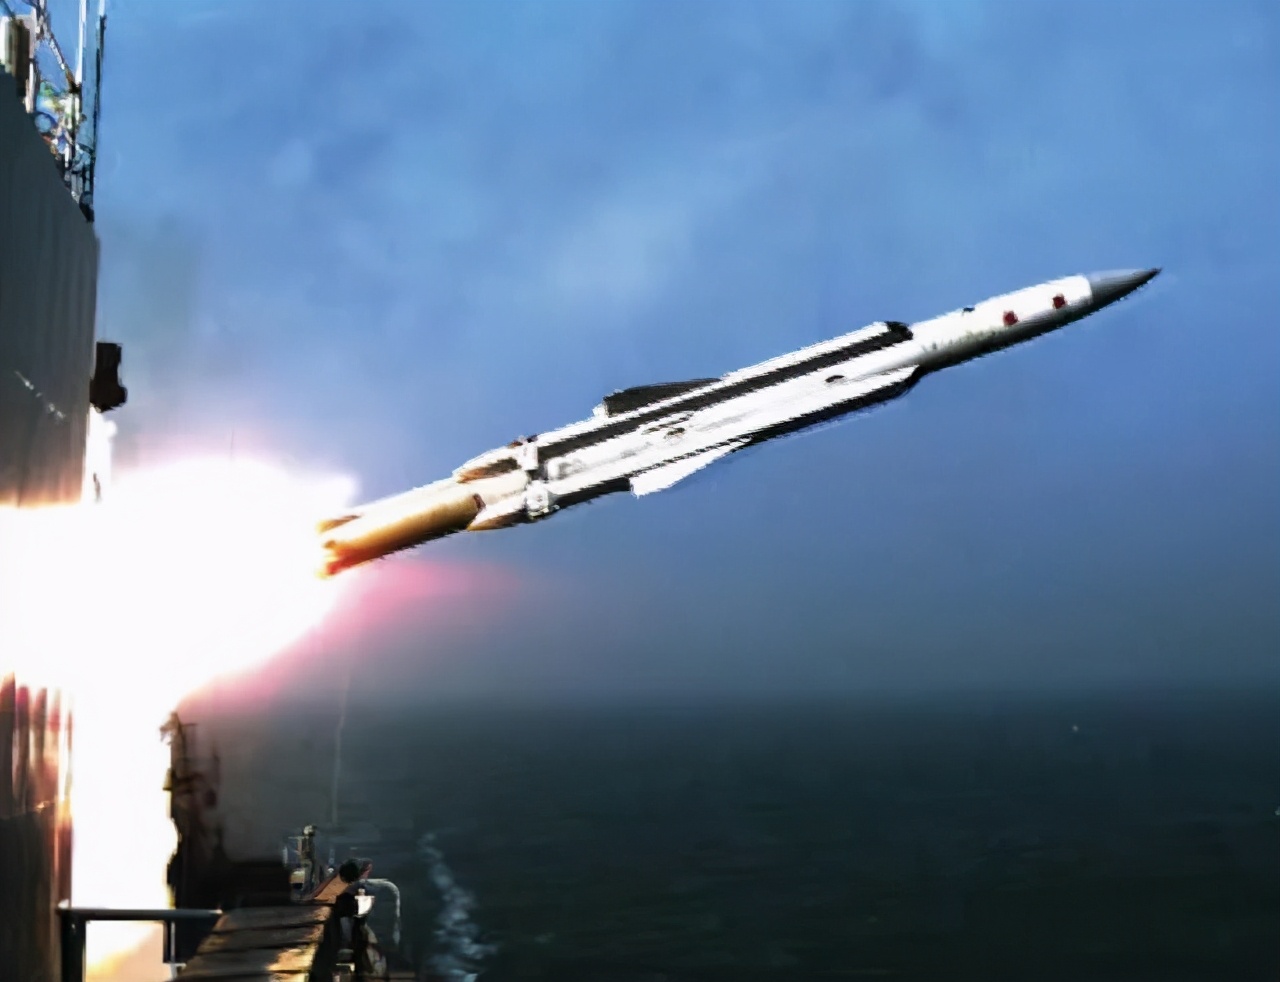 055落败项目？CM401性能一般，中国海军反舰导弹如何选择